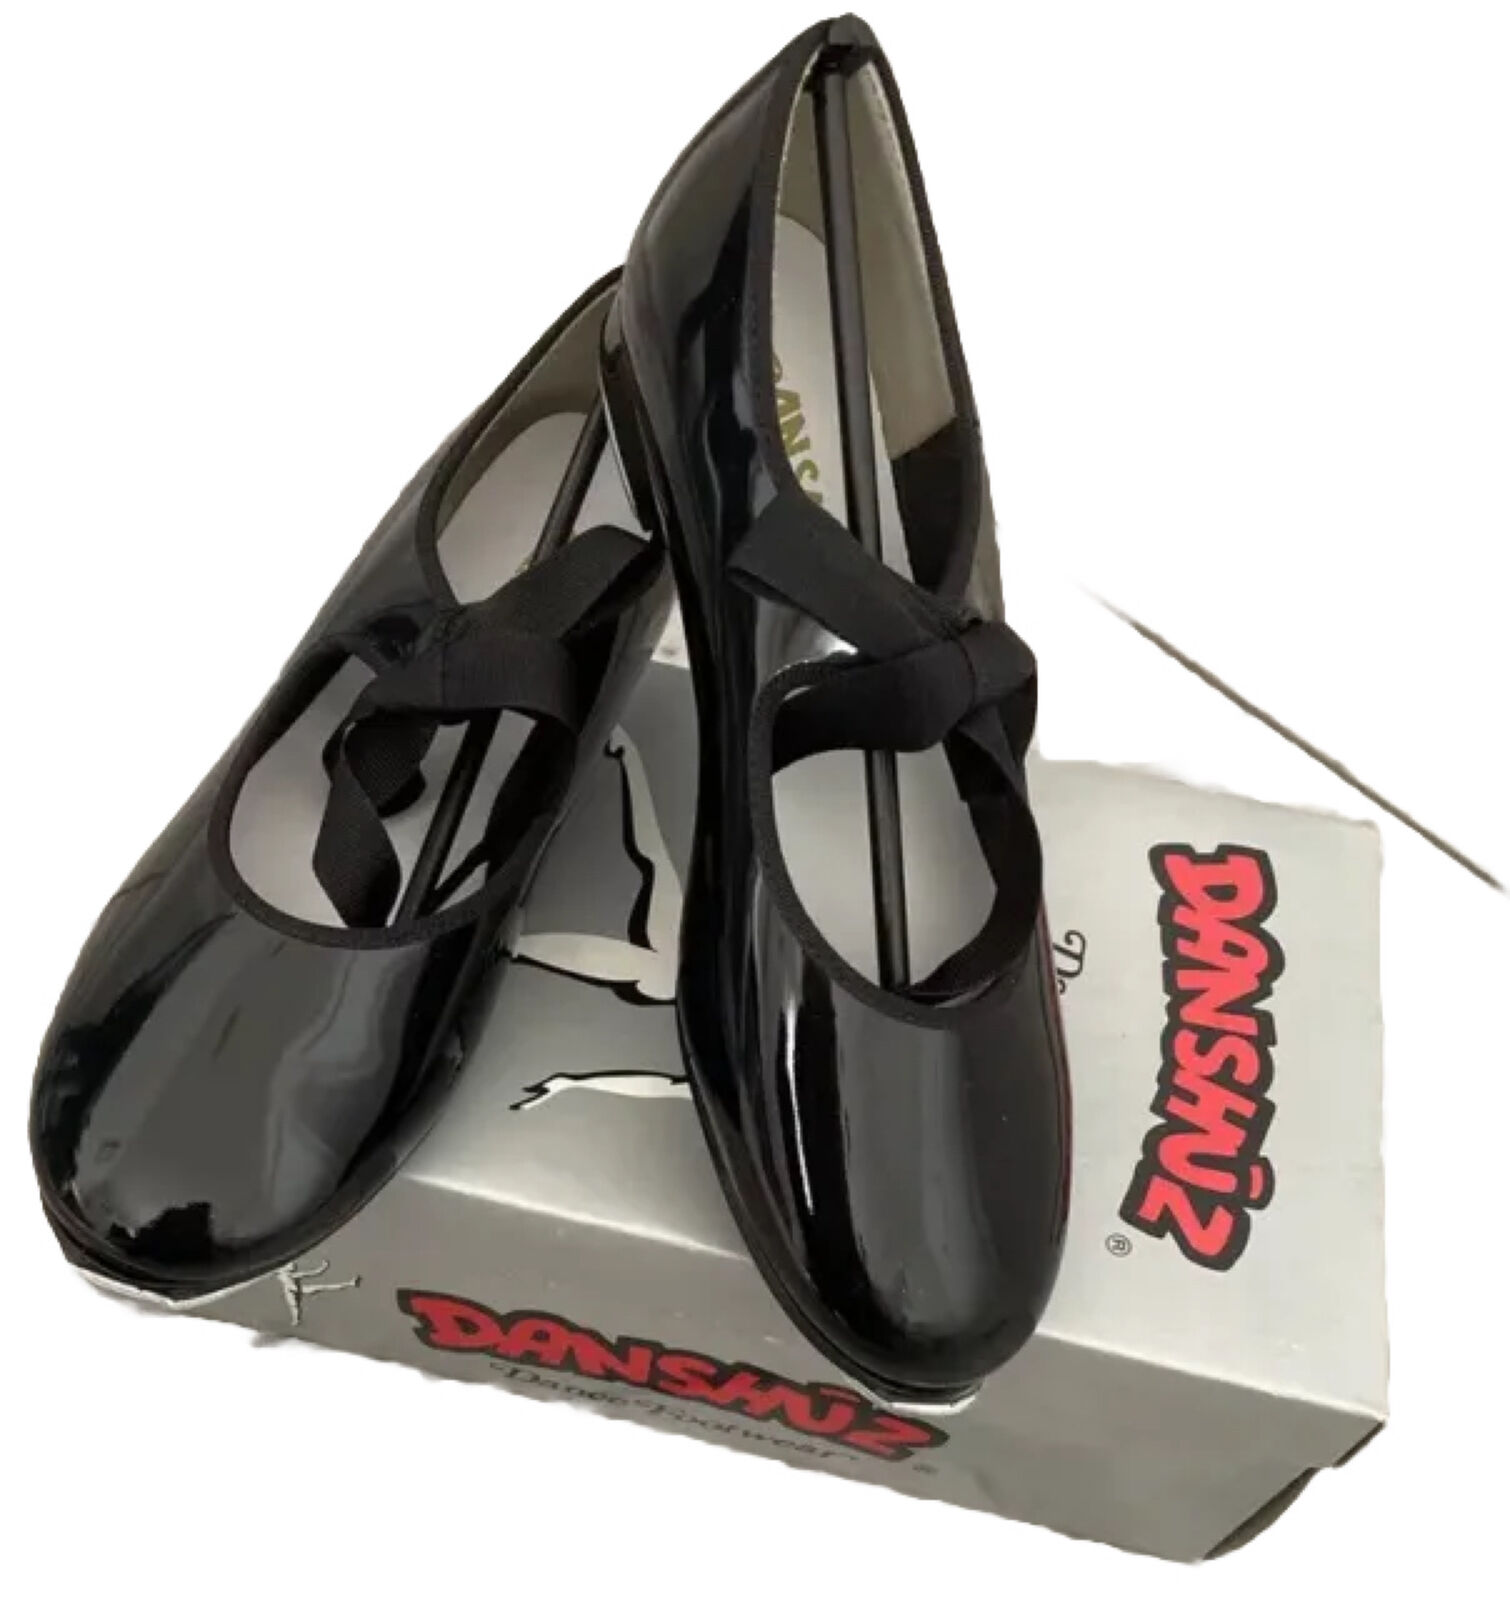 Danshuz Black Patent Leather Lace-Up Tap Shoes-size 2.5 Medium Danshuz - фотография #2